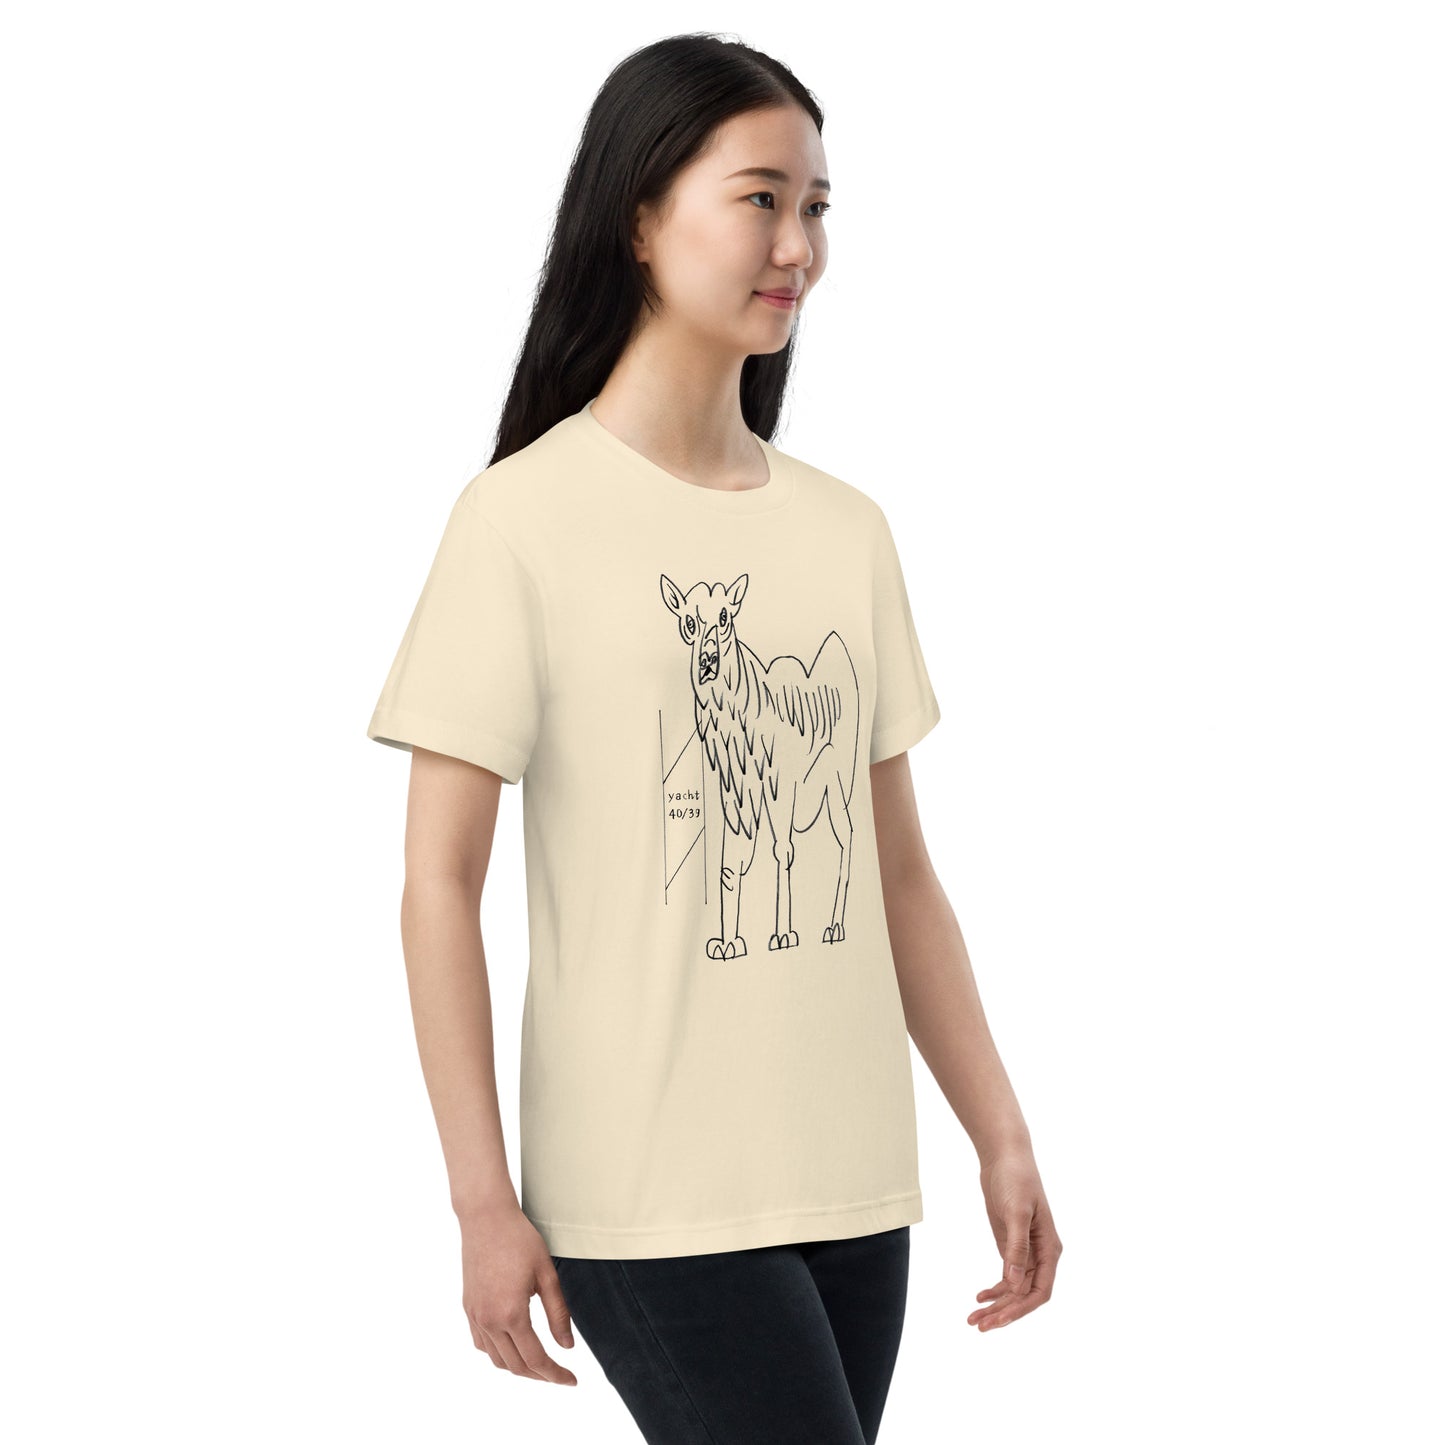 034-よしもり たけはる-Camel-前面プリントTシャツ-アートをデザイン